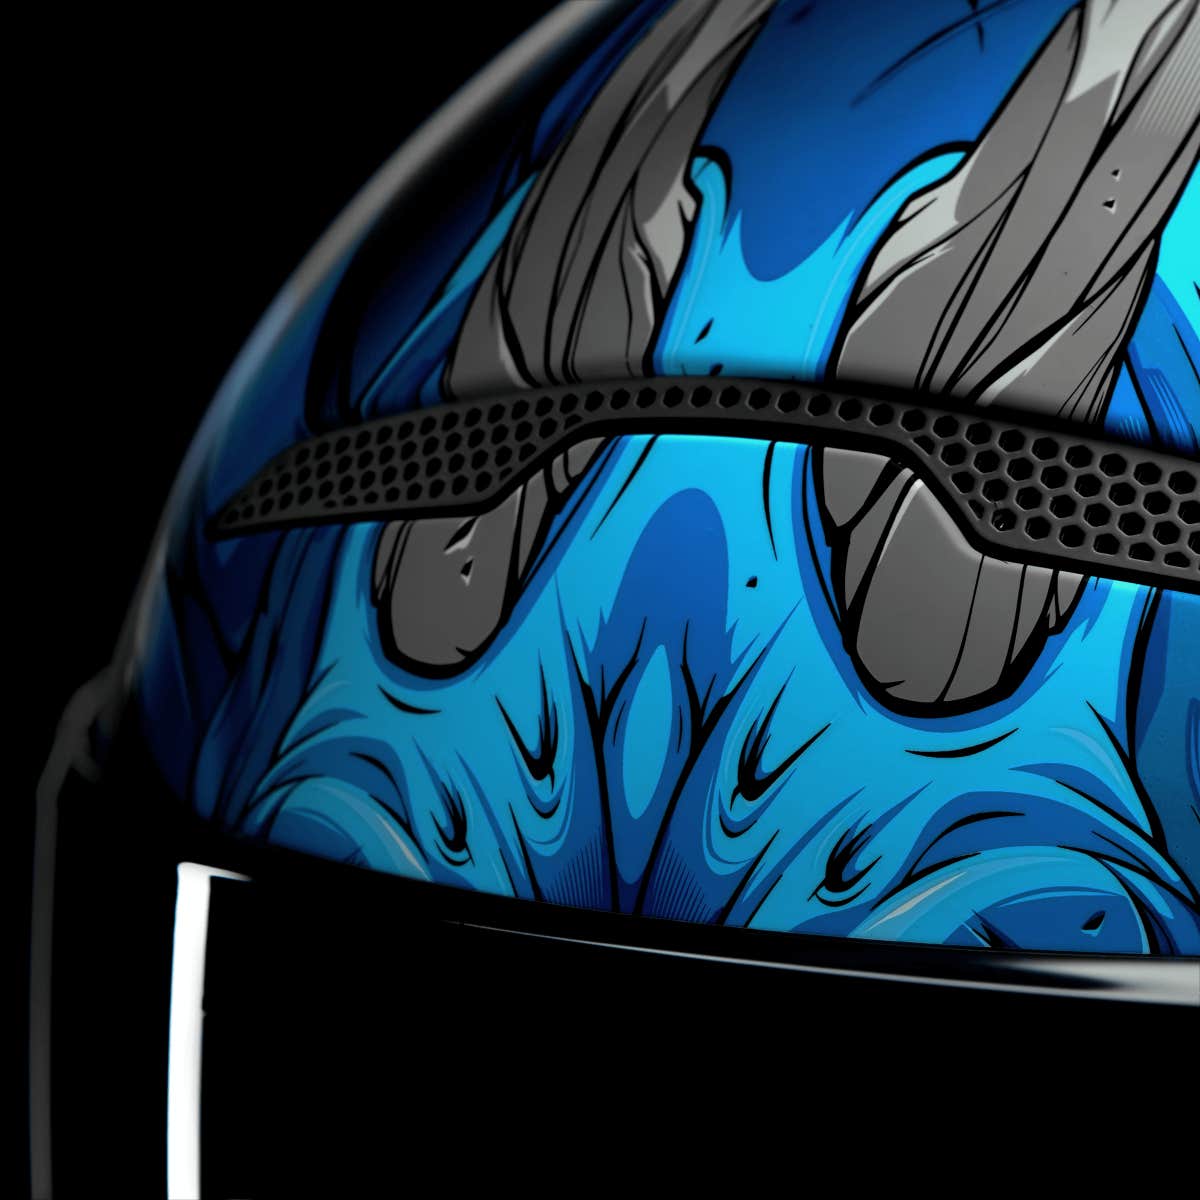 Atlas 3.0 Helmet - Diablo Azul - Schadhaft